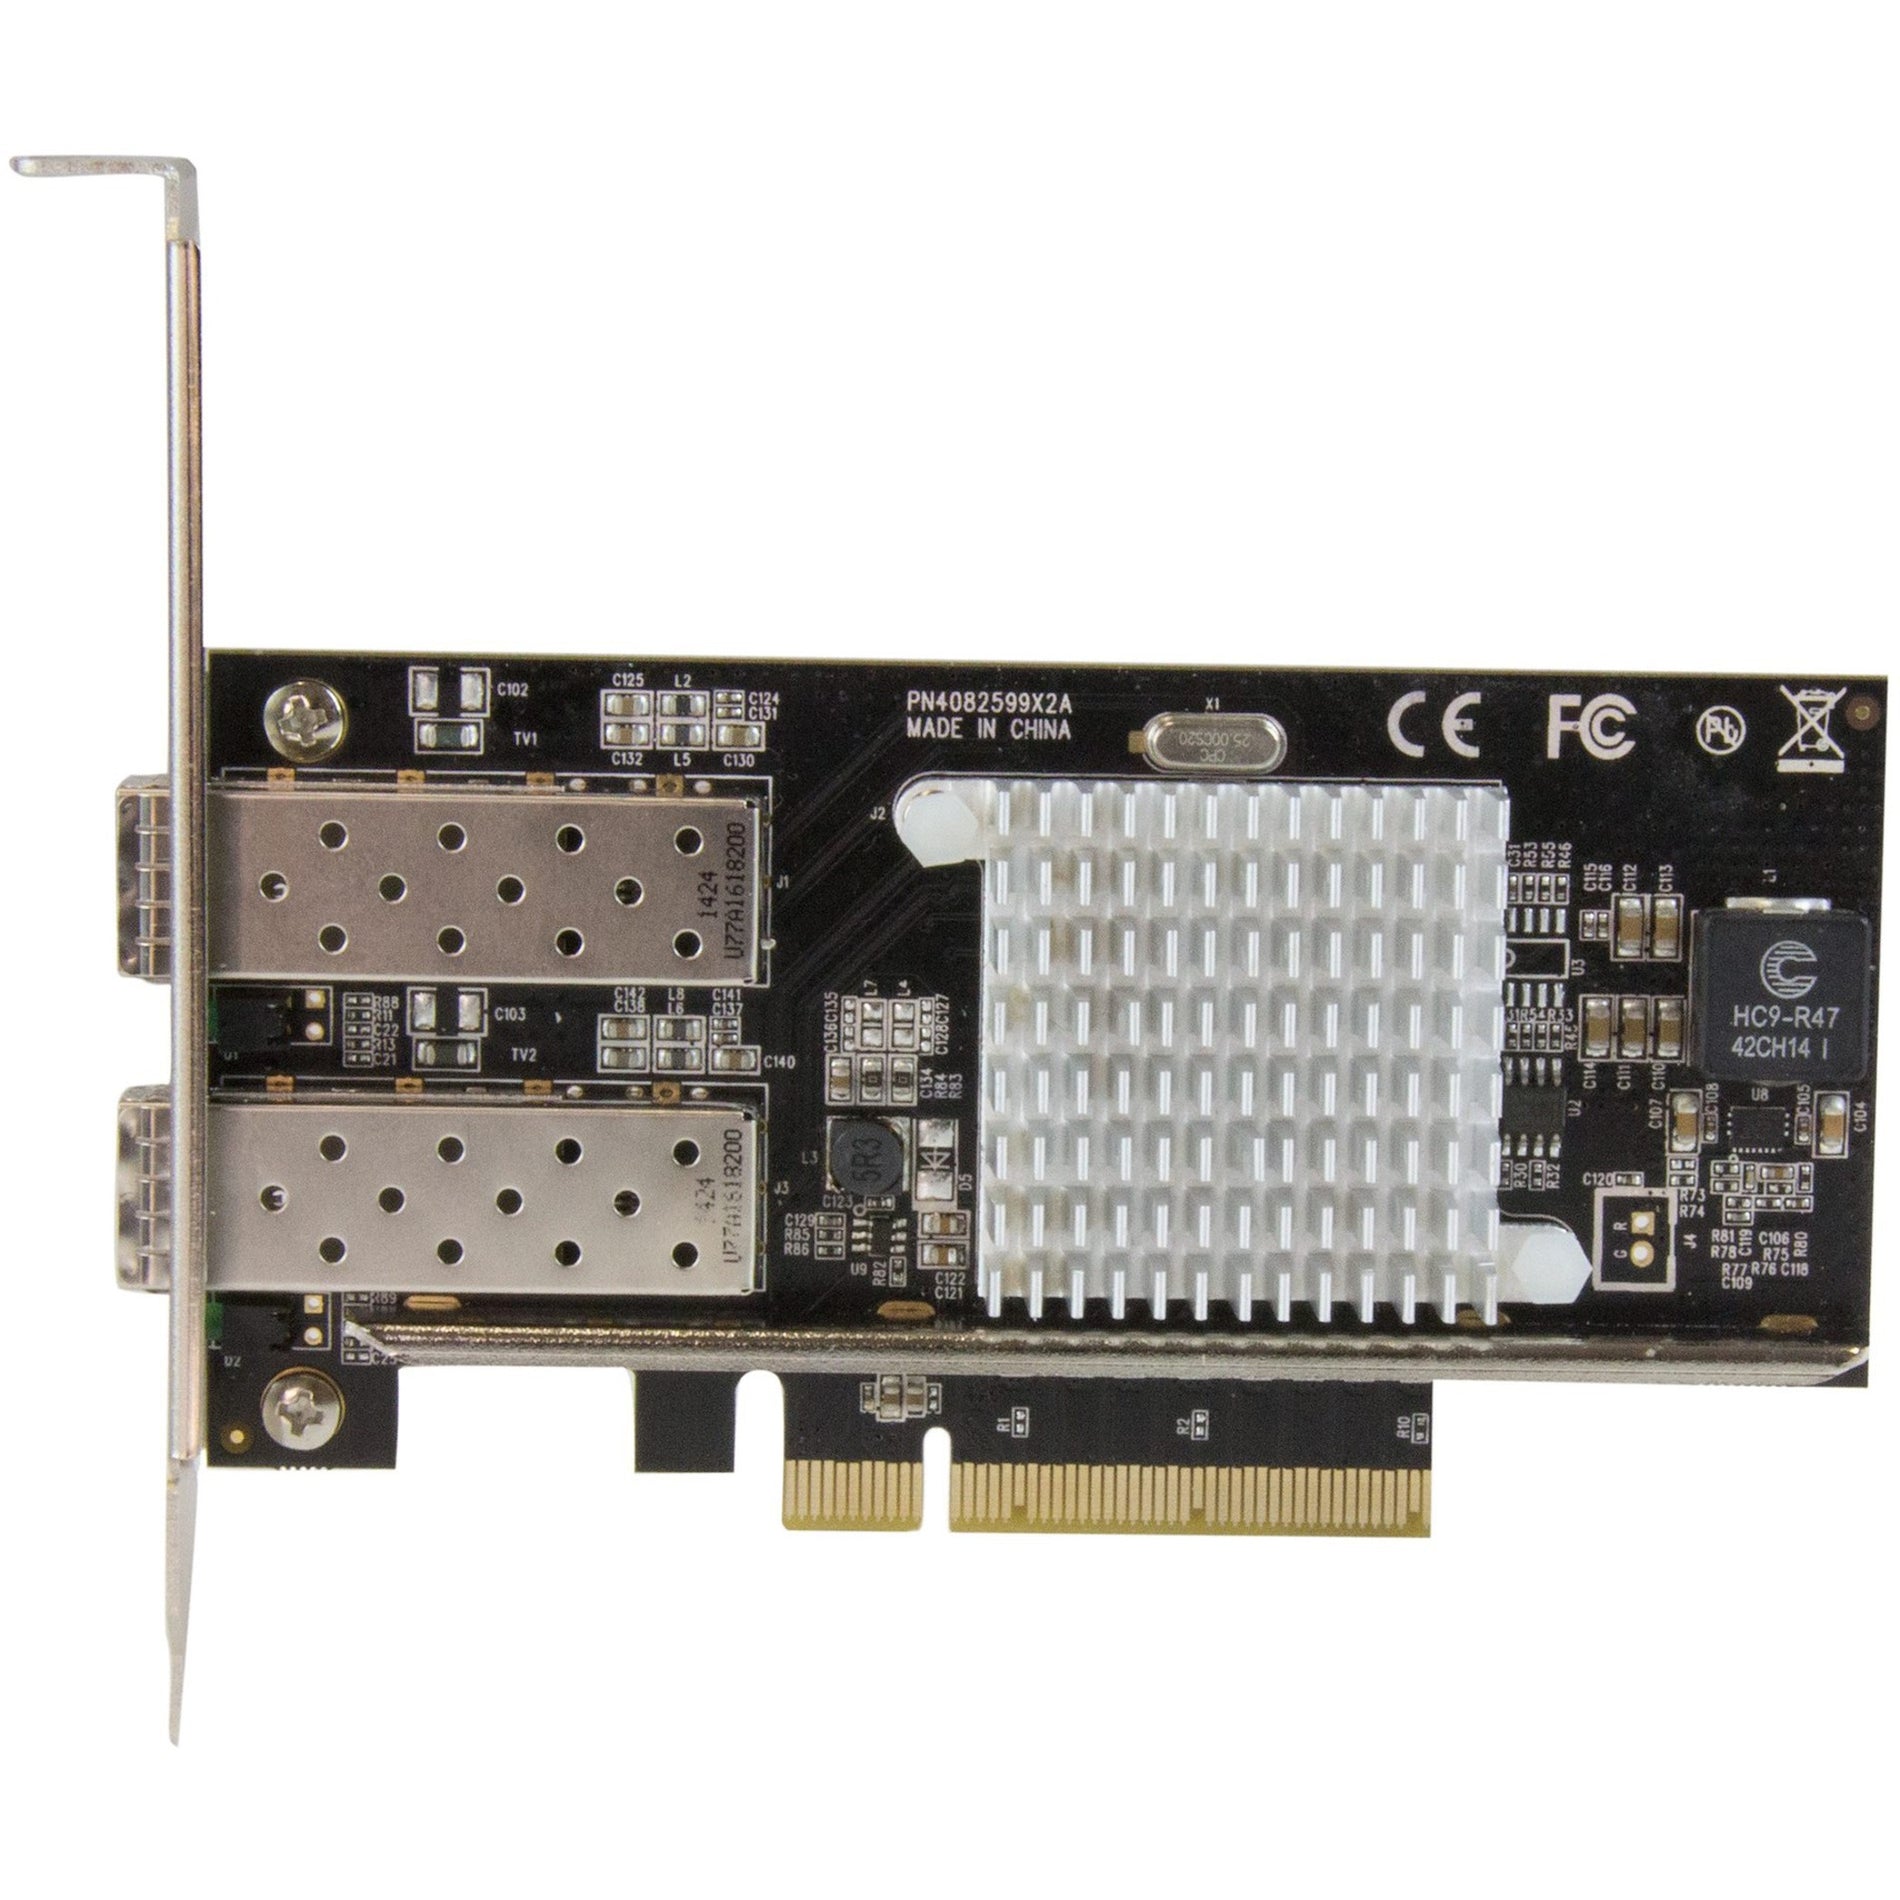 StarTech.com - ستار تك  بطاقة شبكة ليفية 10 جيجا بايت بـ 2 منفذ مع SFP+ - PCIe، رقاقة إنتل، توصيل إيثرنت عالي السرعة